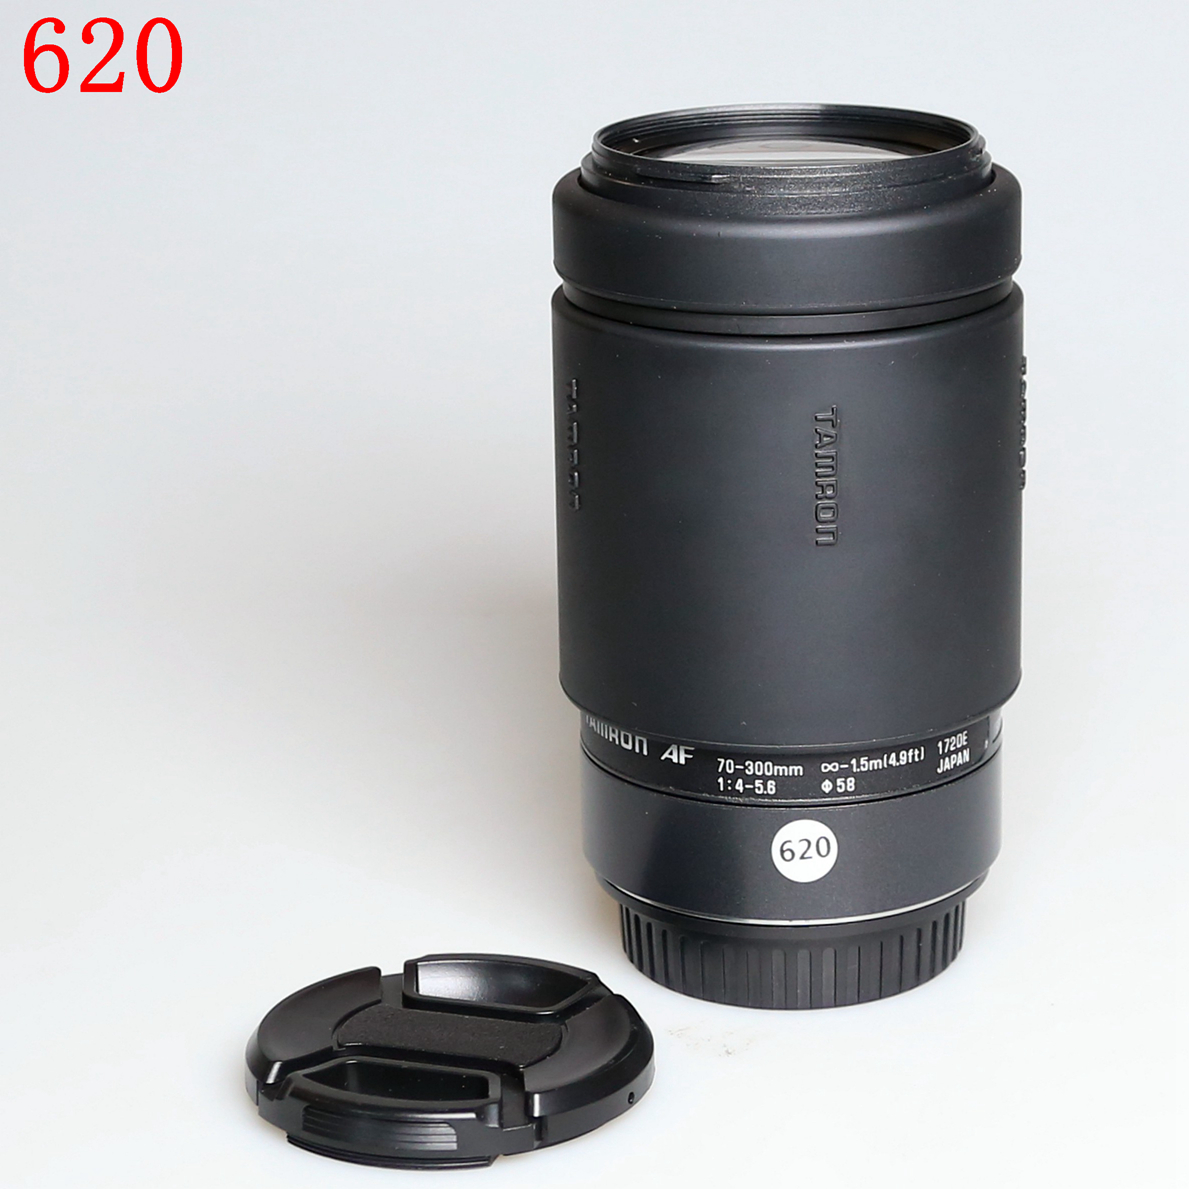 腾龙SP 70-300mm 全画幅长焦镜头编号620